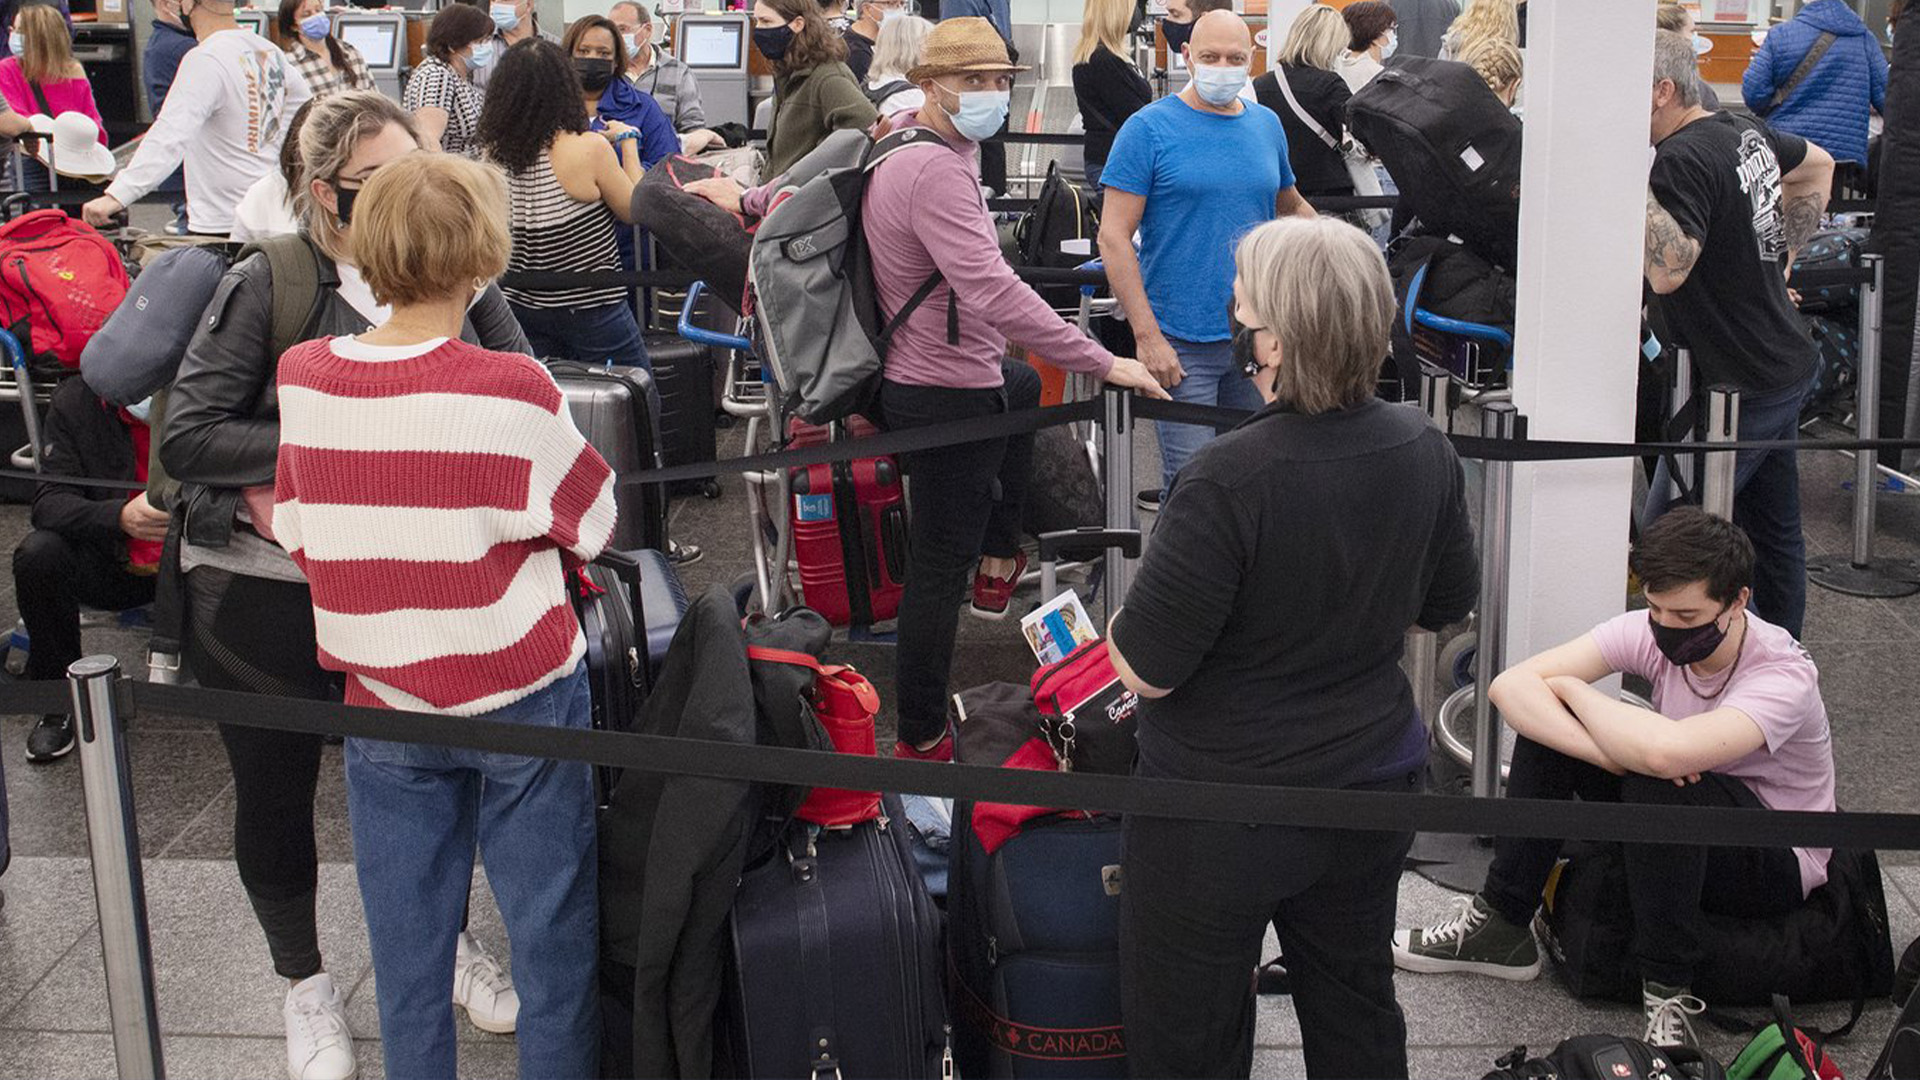 Les voyageurs font la queue à un comptoir d'enregistrement à l'aéroport Trudeau de Montréal, le mercredi 20 avril 2022. Les aéroports et les compagnies aériennes canadiennes ont enregistré un grand nombre de retards de vol le mois dernier, ce qui soulève des questions sur leur état de préparation pour la ruée vers les voyages d'été.